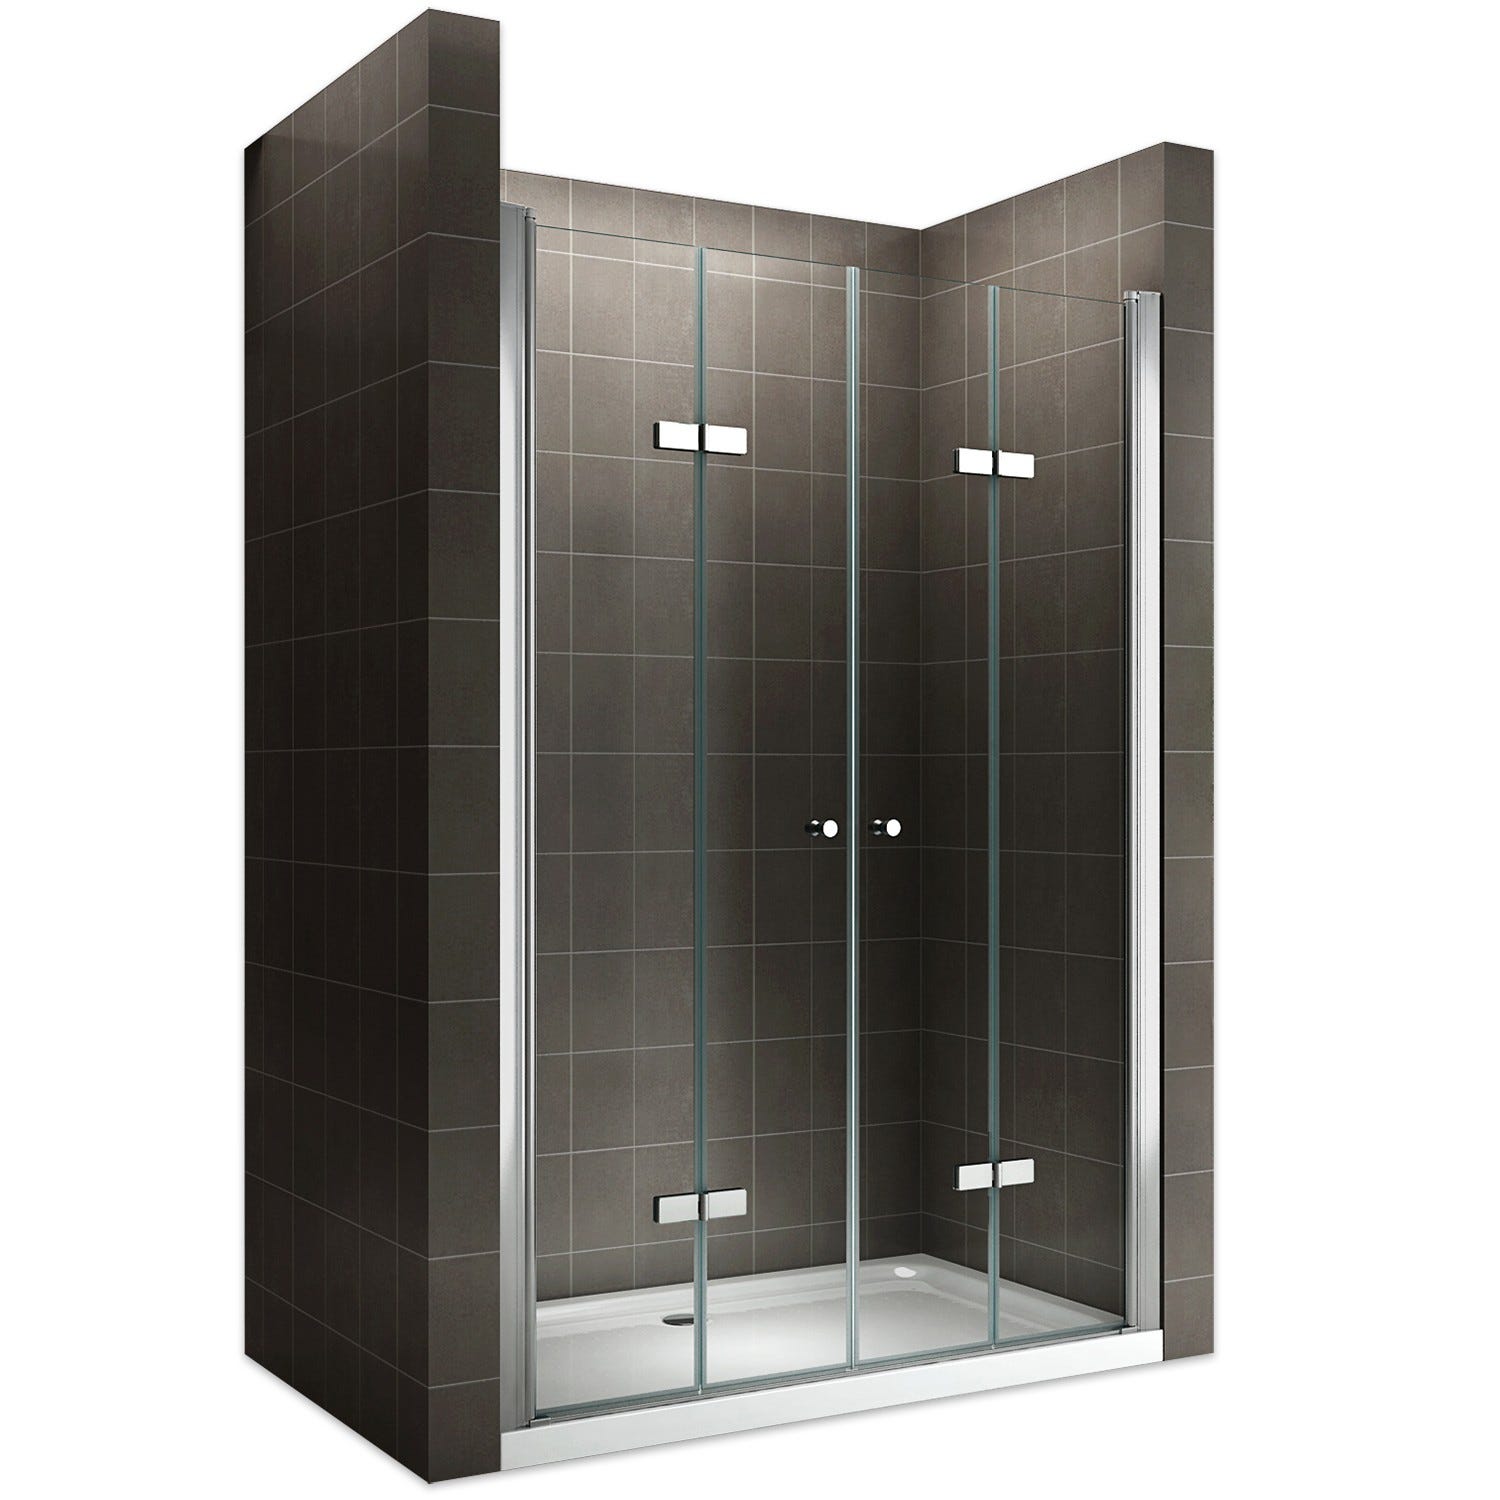 EMMY Porte de douche pliante pivotante H 185 cm largeur réglable 80 à 84 cm verre transparent 0